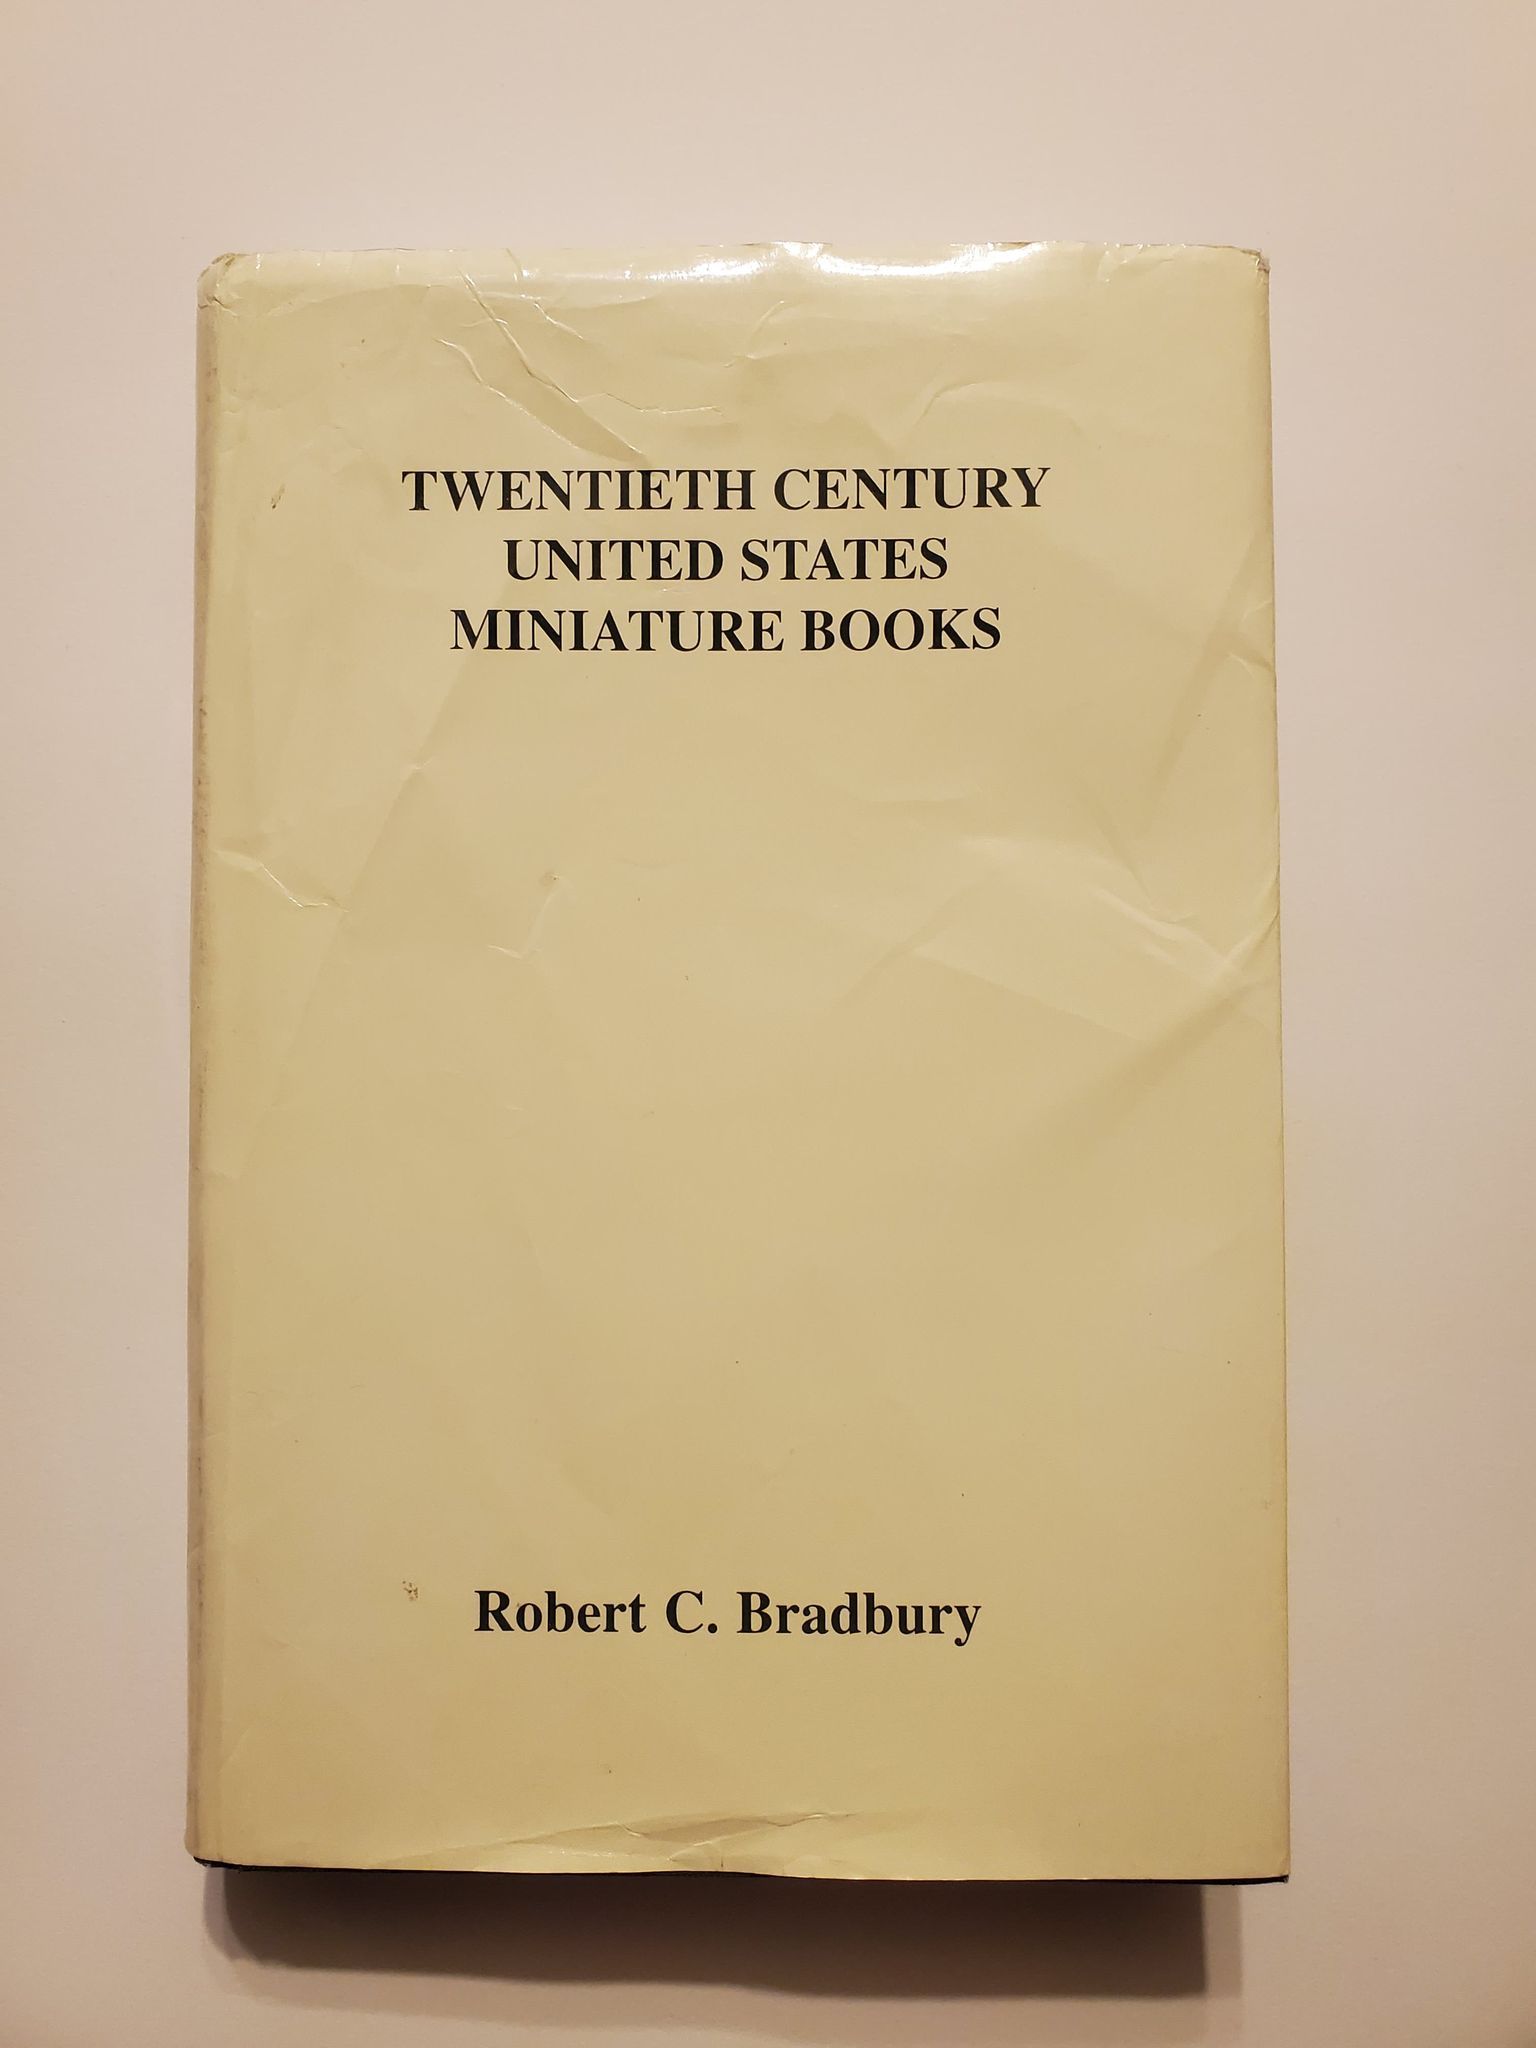 Twentieth Century United States Miniature Books